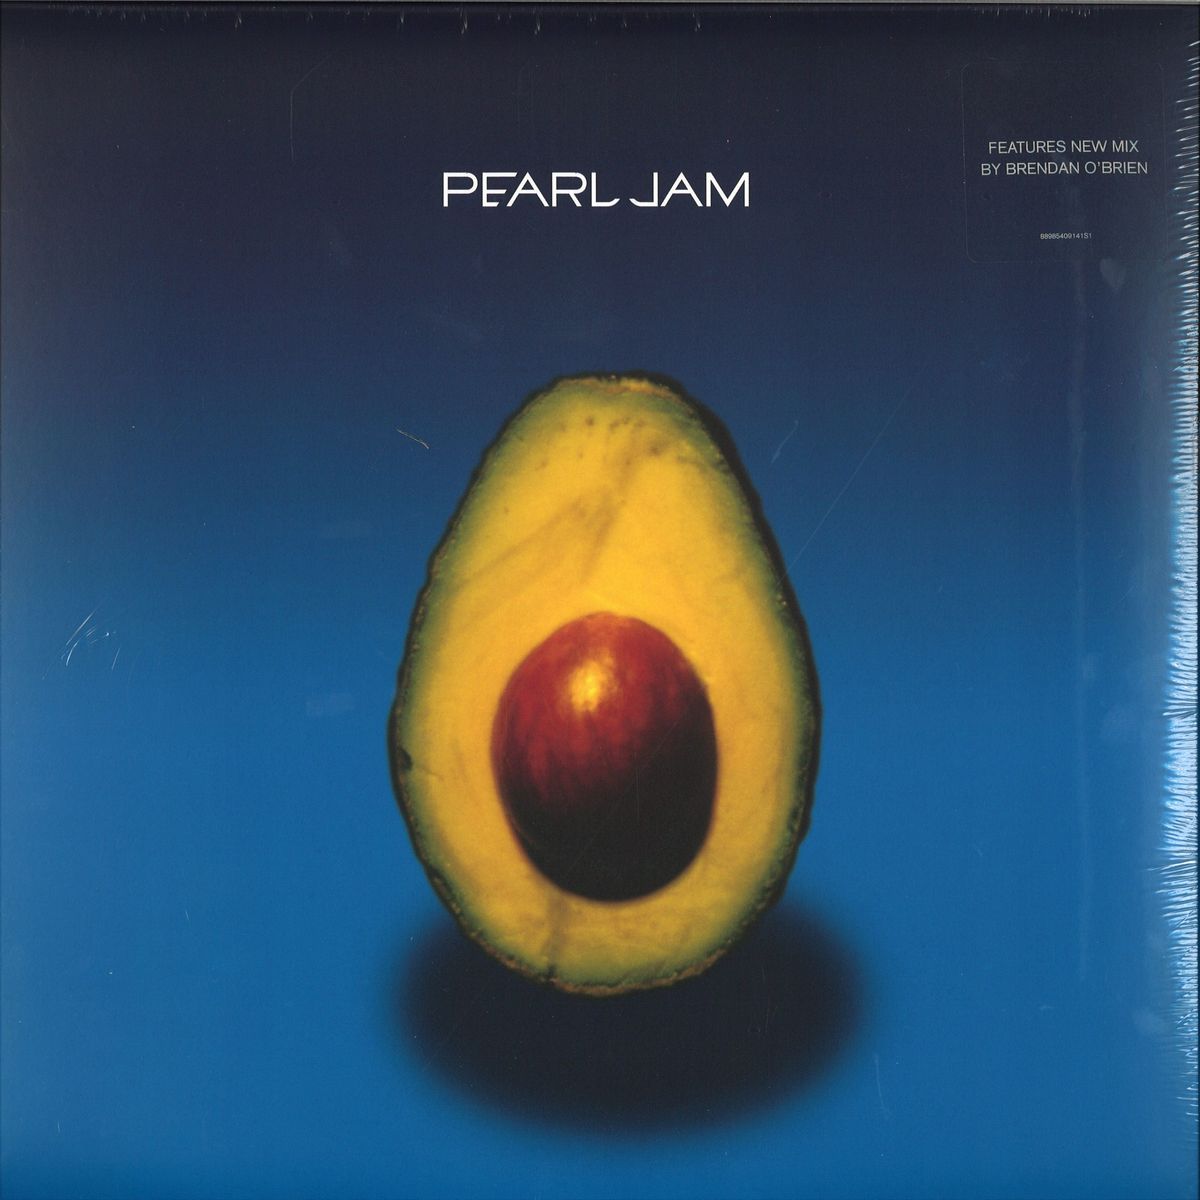 <b>Pearl Jam</b>, Pearl Jam – CD